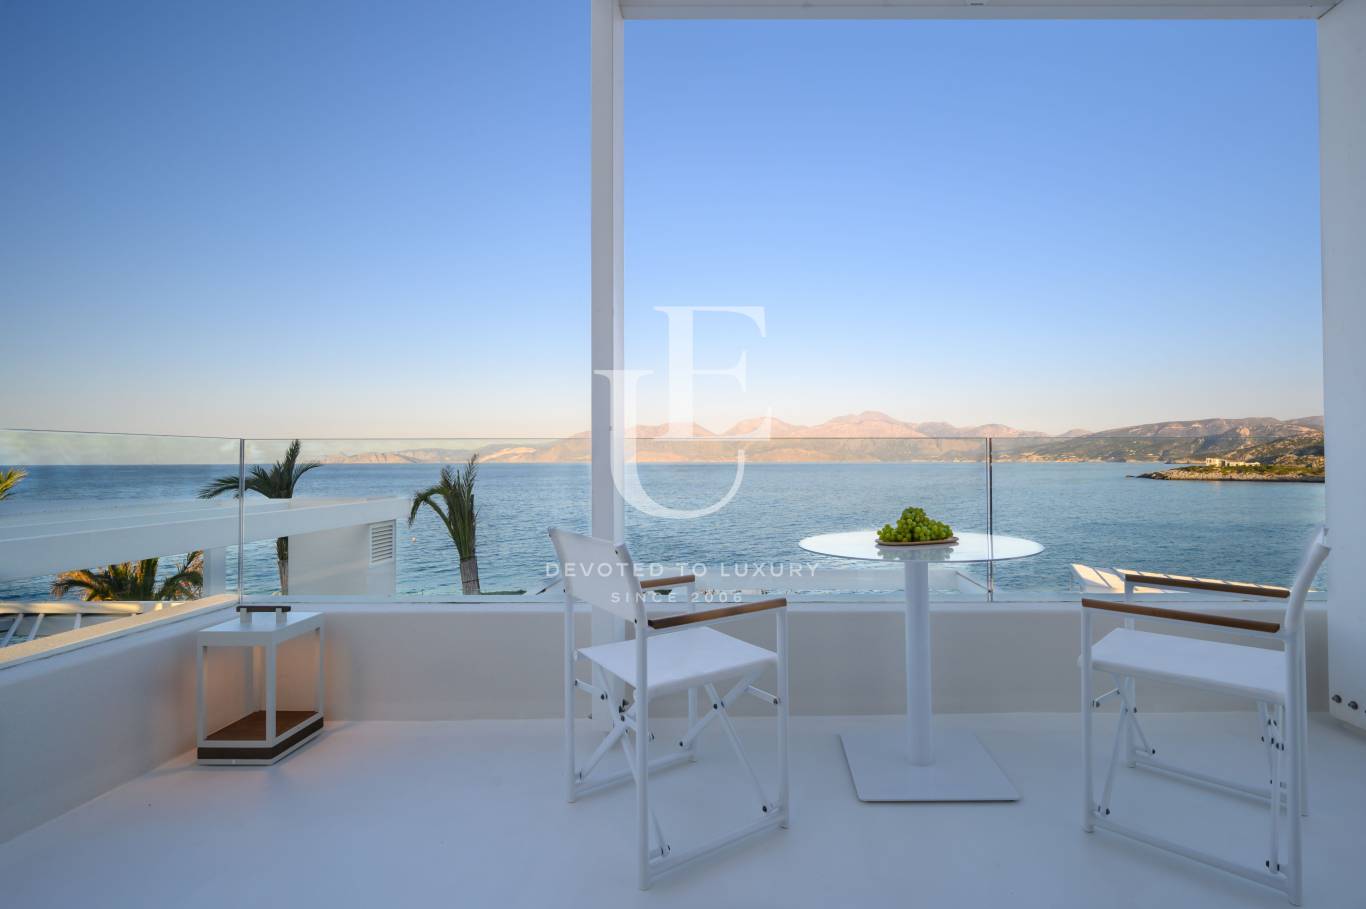 Хотел / Apartment house за продажба в остров Крит,  - код на имота: N21077 - image 5